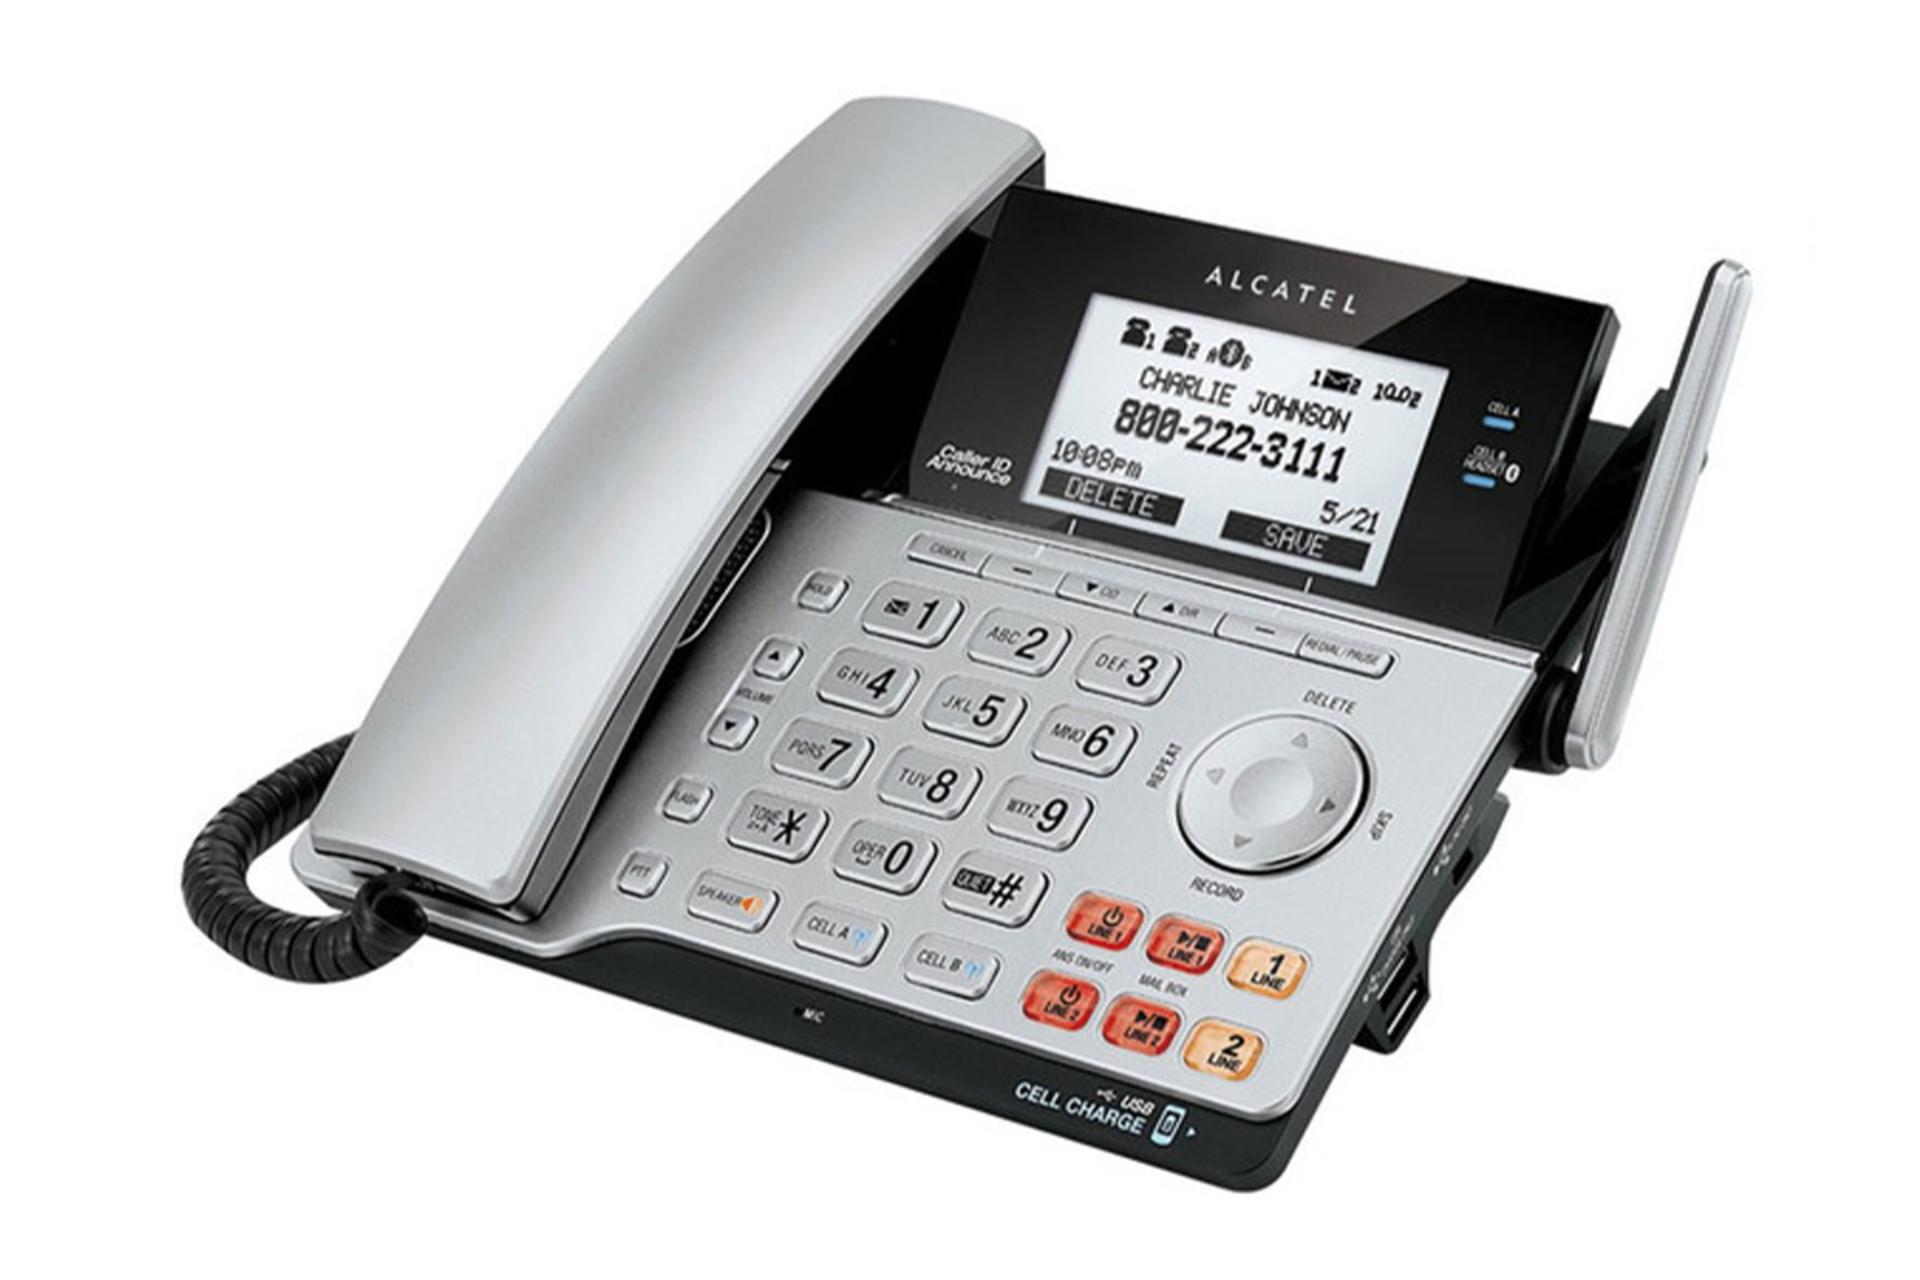 تلفن آلکاتل XPS2120 نمای پایه